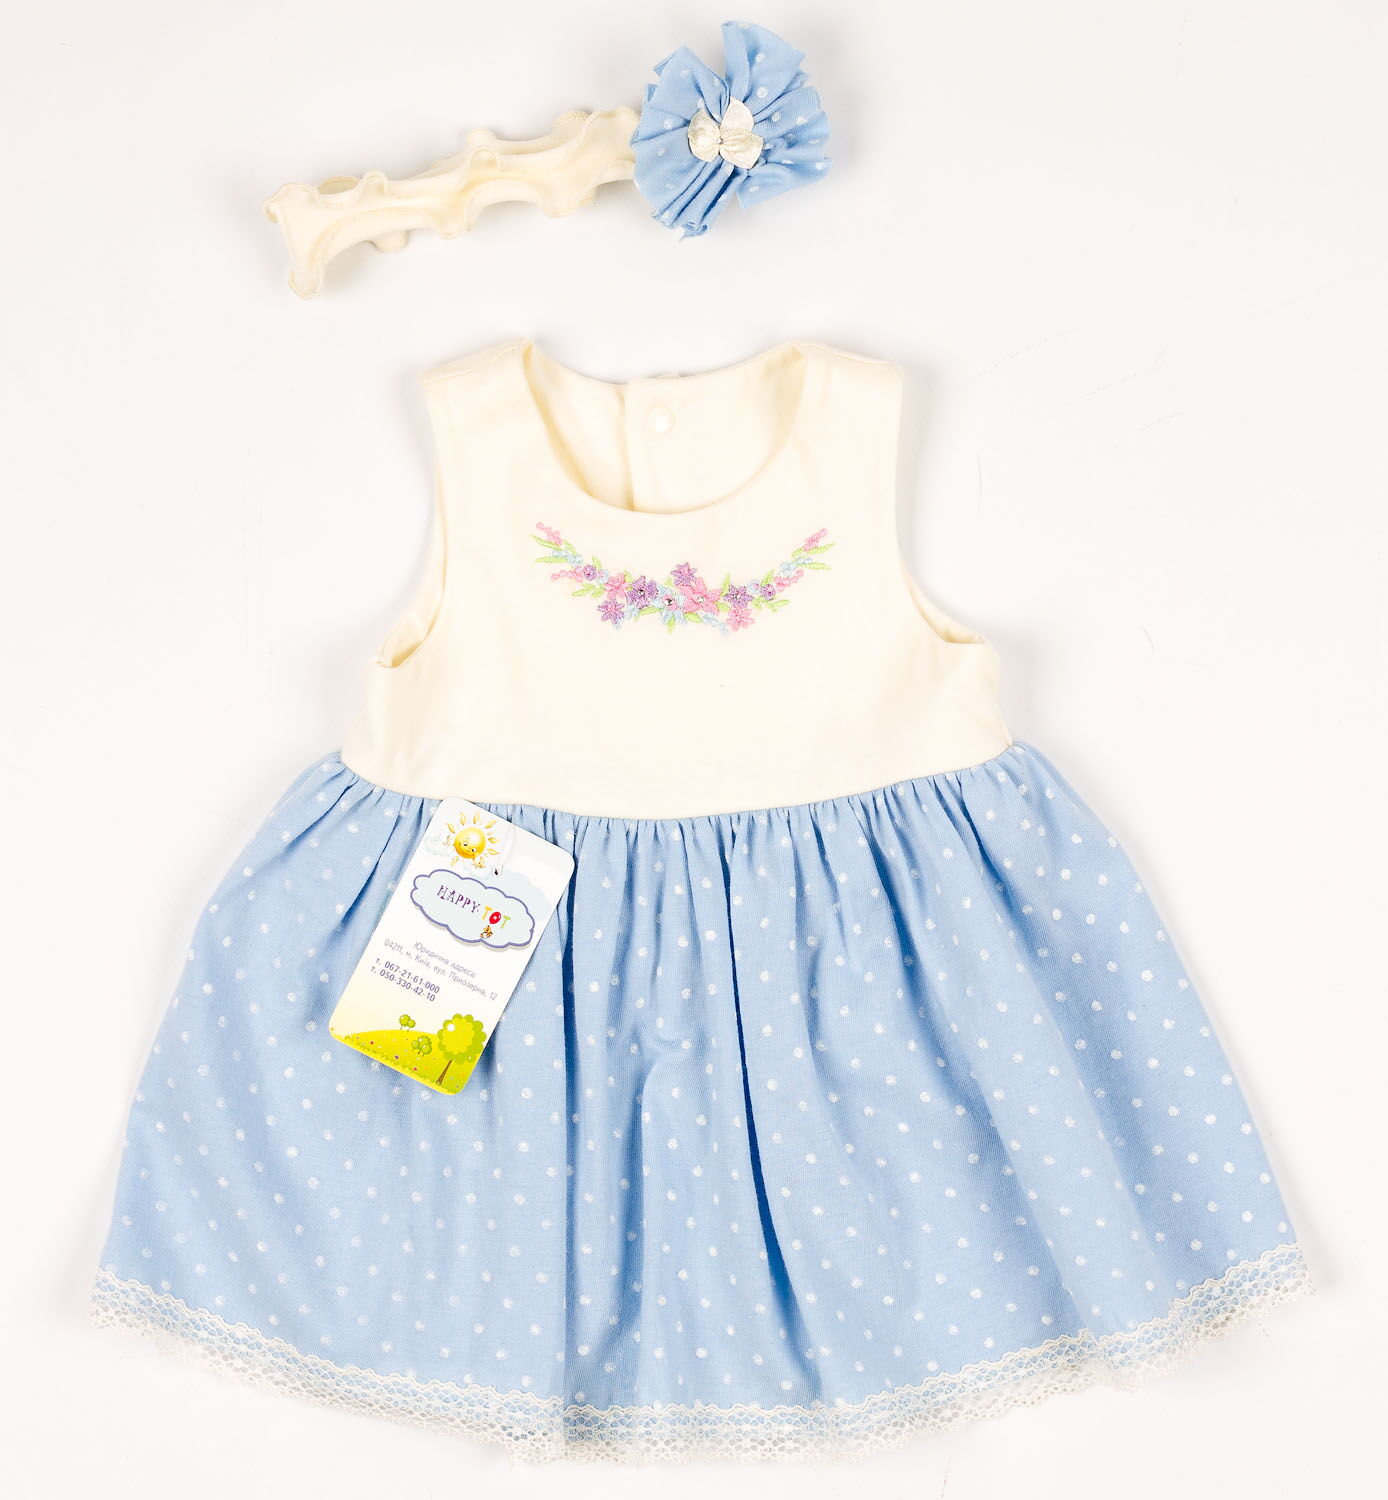 Платье+повязка для девочки HappyTOT Букетик голубое 721 - цена